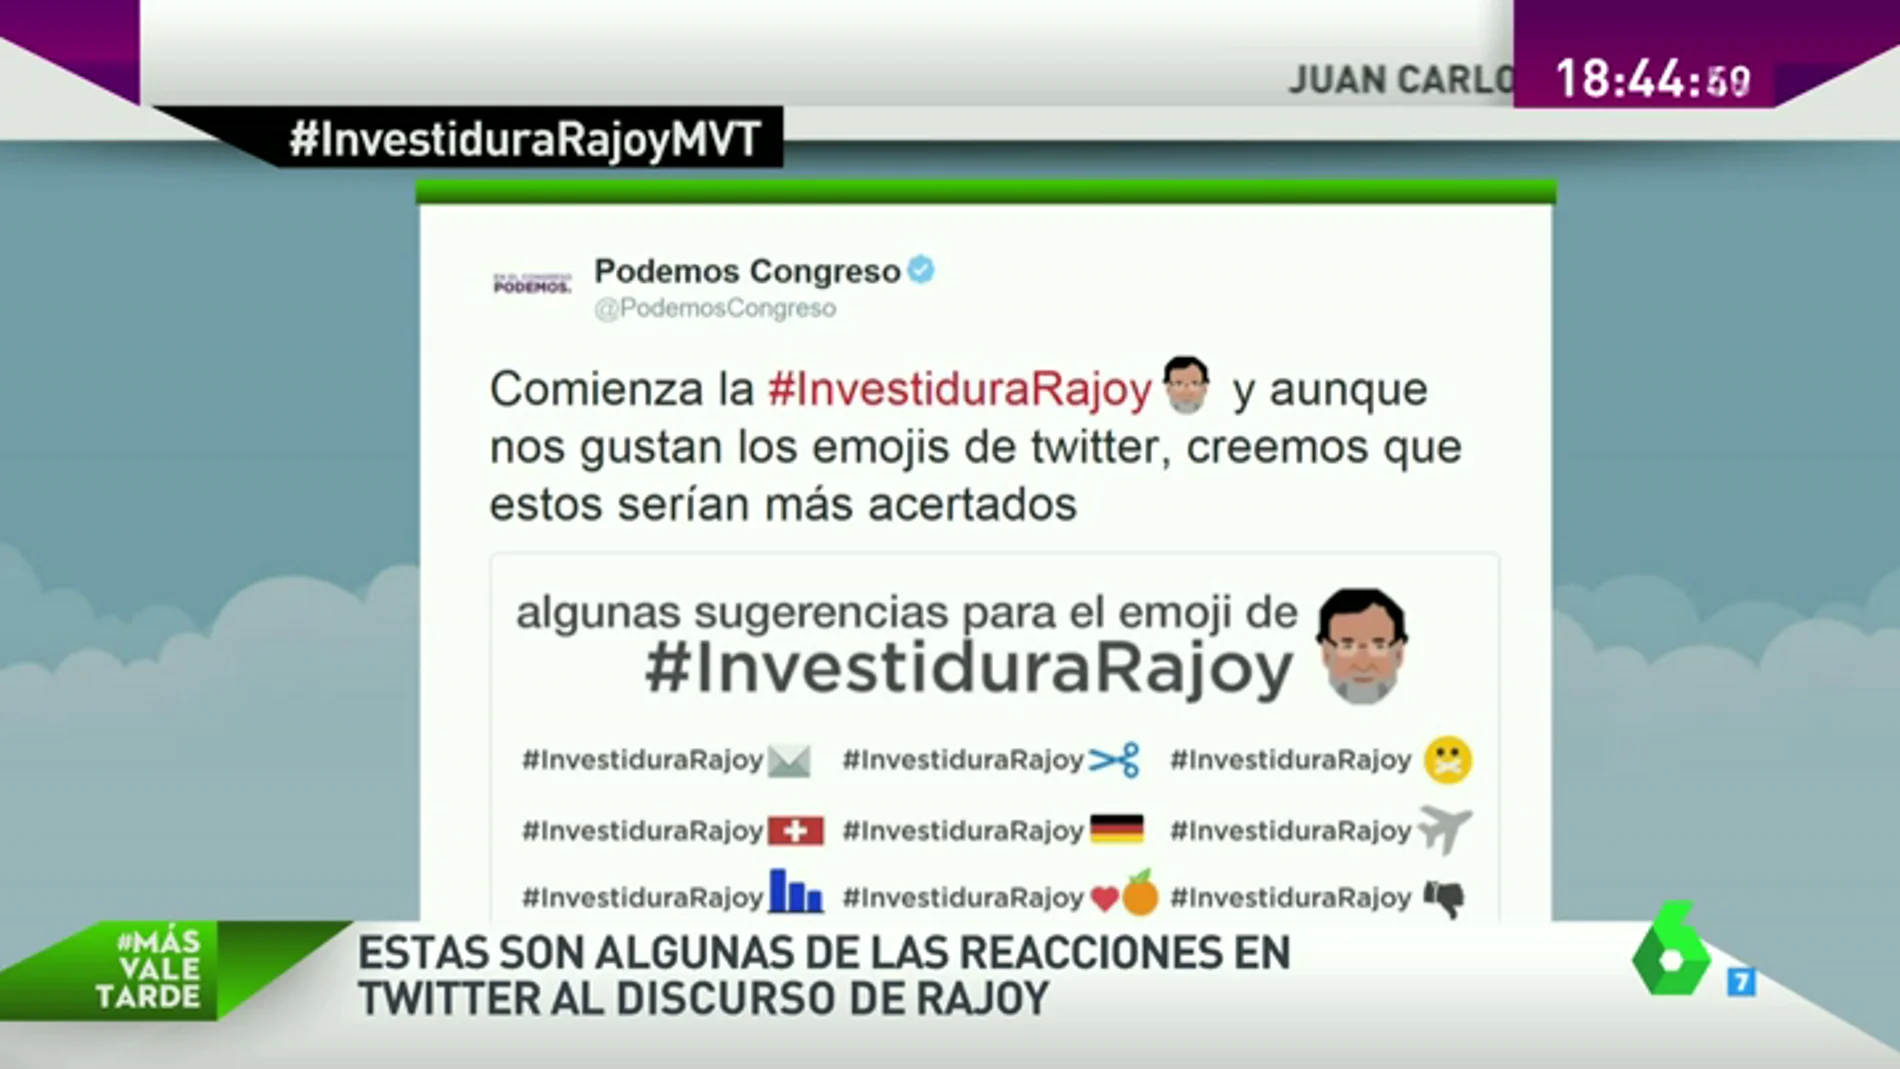 Frame 47.107992 de: De mostrar su rechazo a sacar el lado más humorístico, las mejores reacciones en redes sociales al discurso de Rajoy